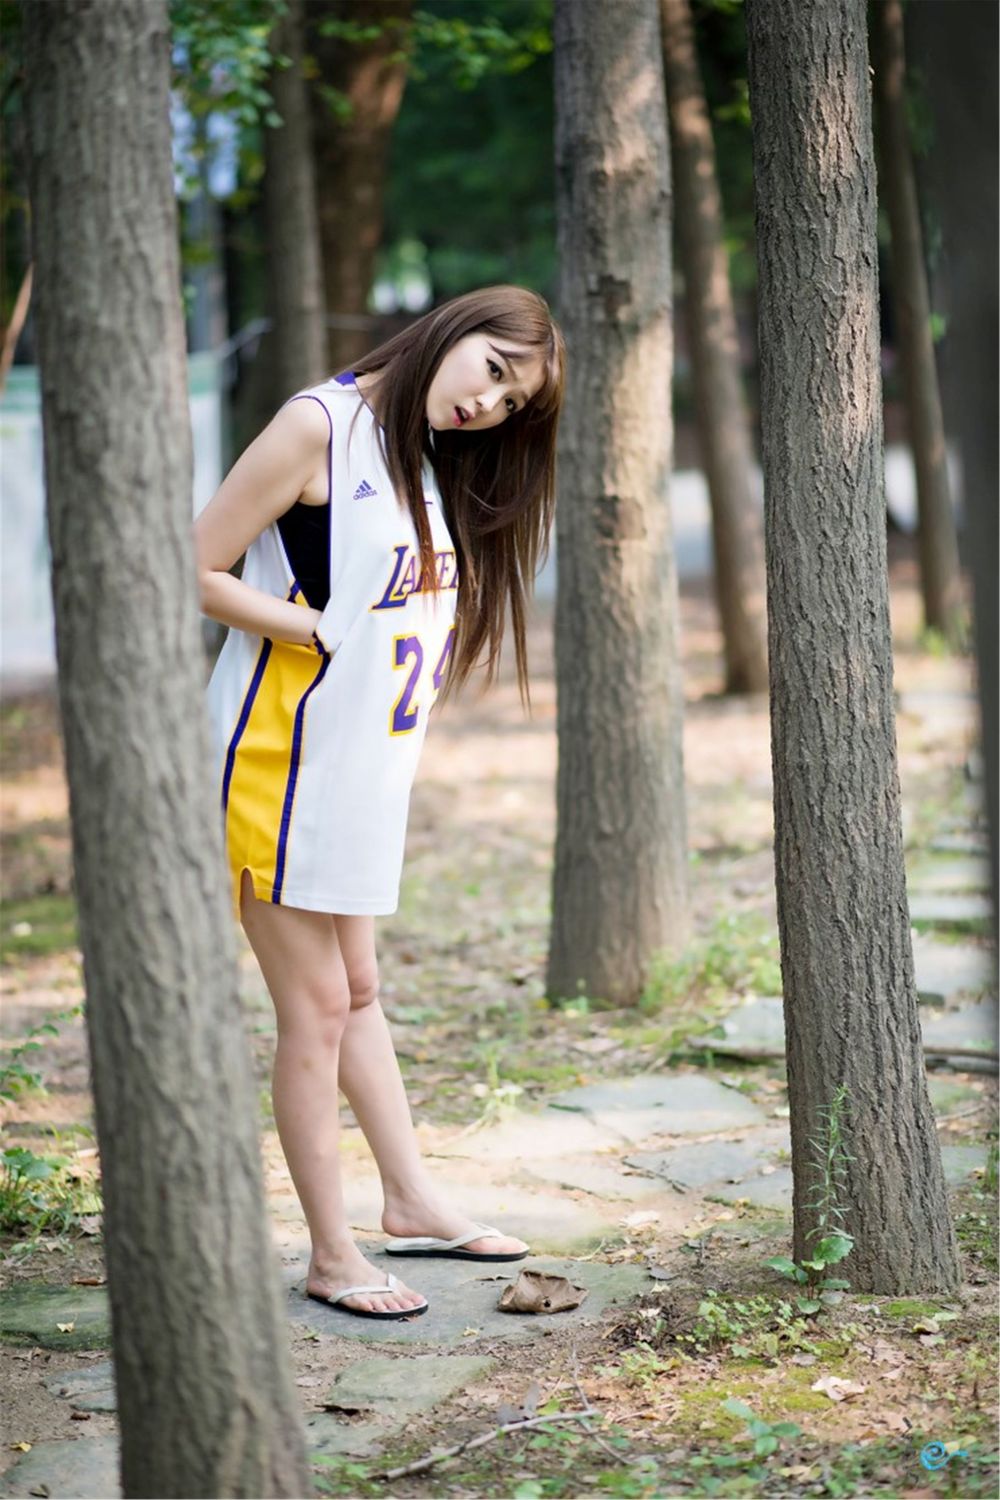 韩国网络李恩慧白与黑篮球宝贝装扮户外清纯写真